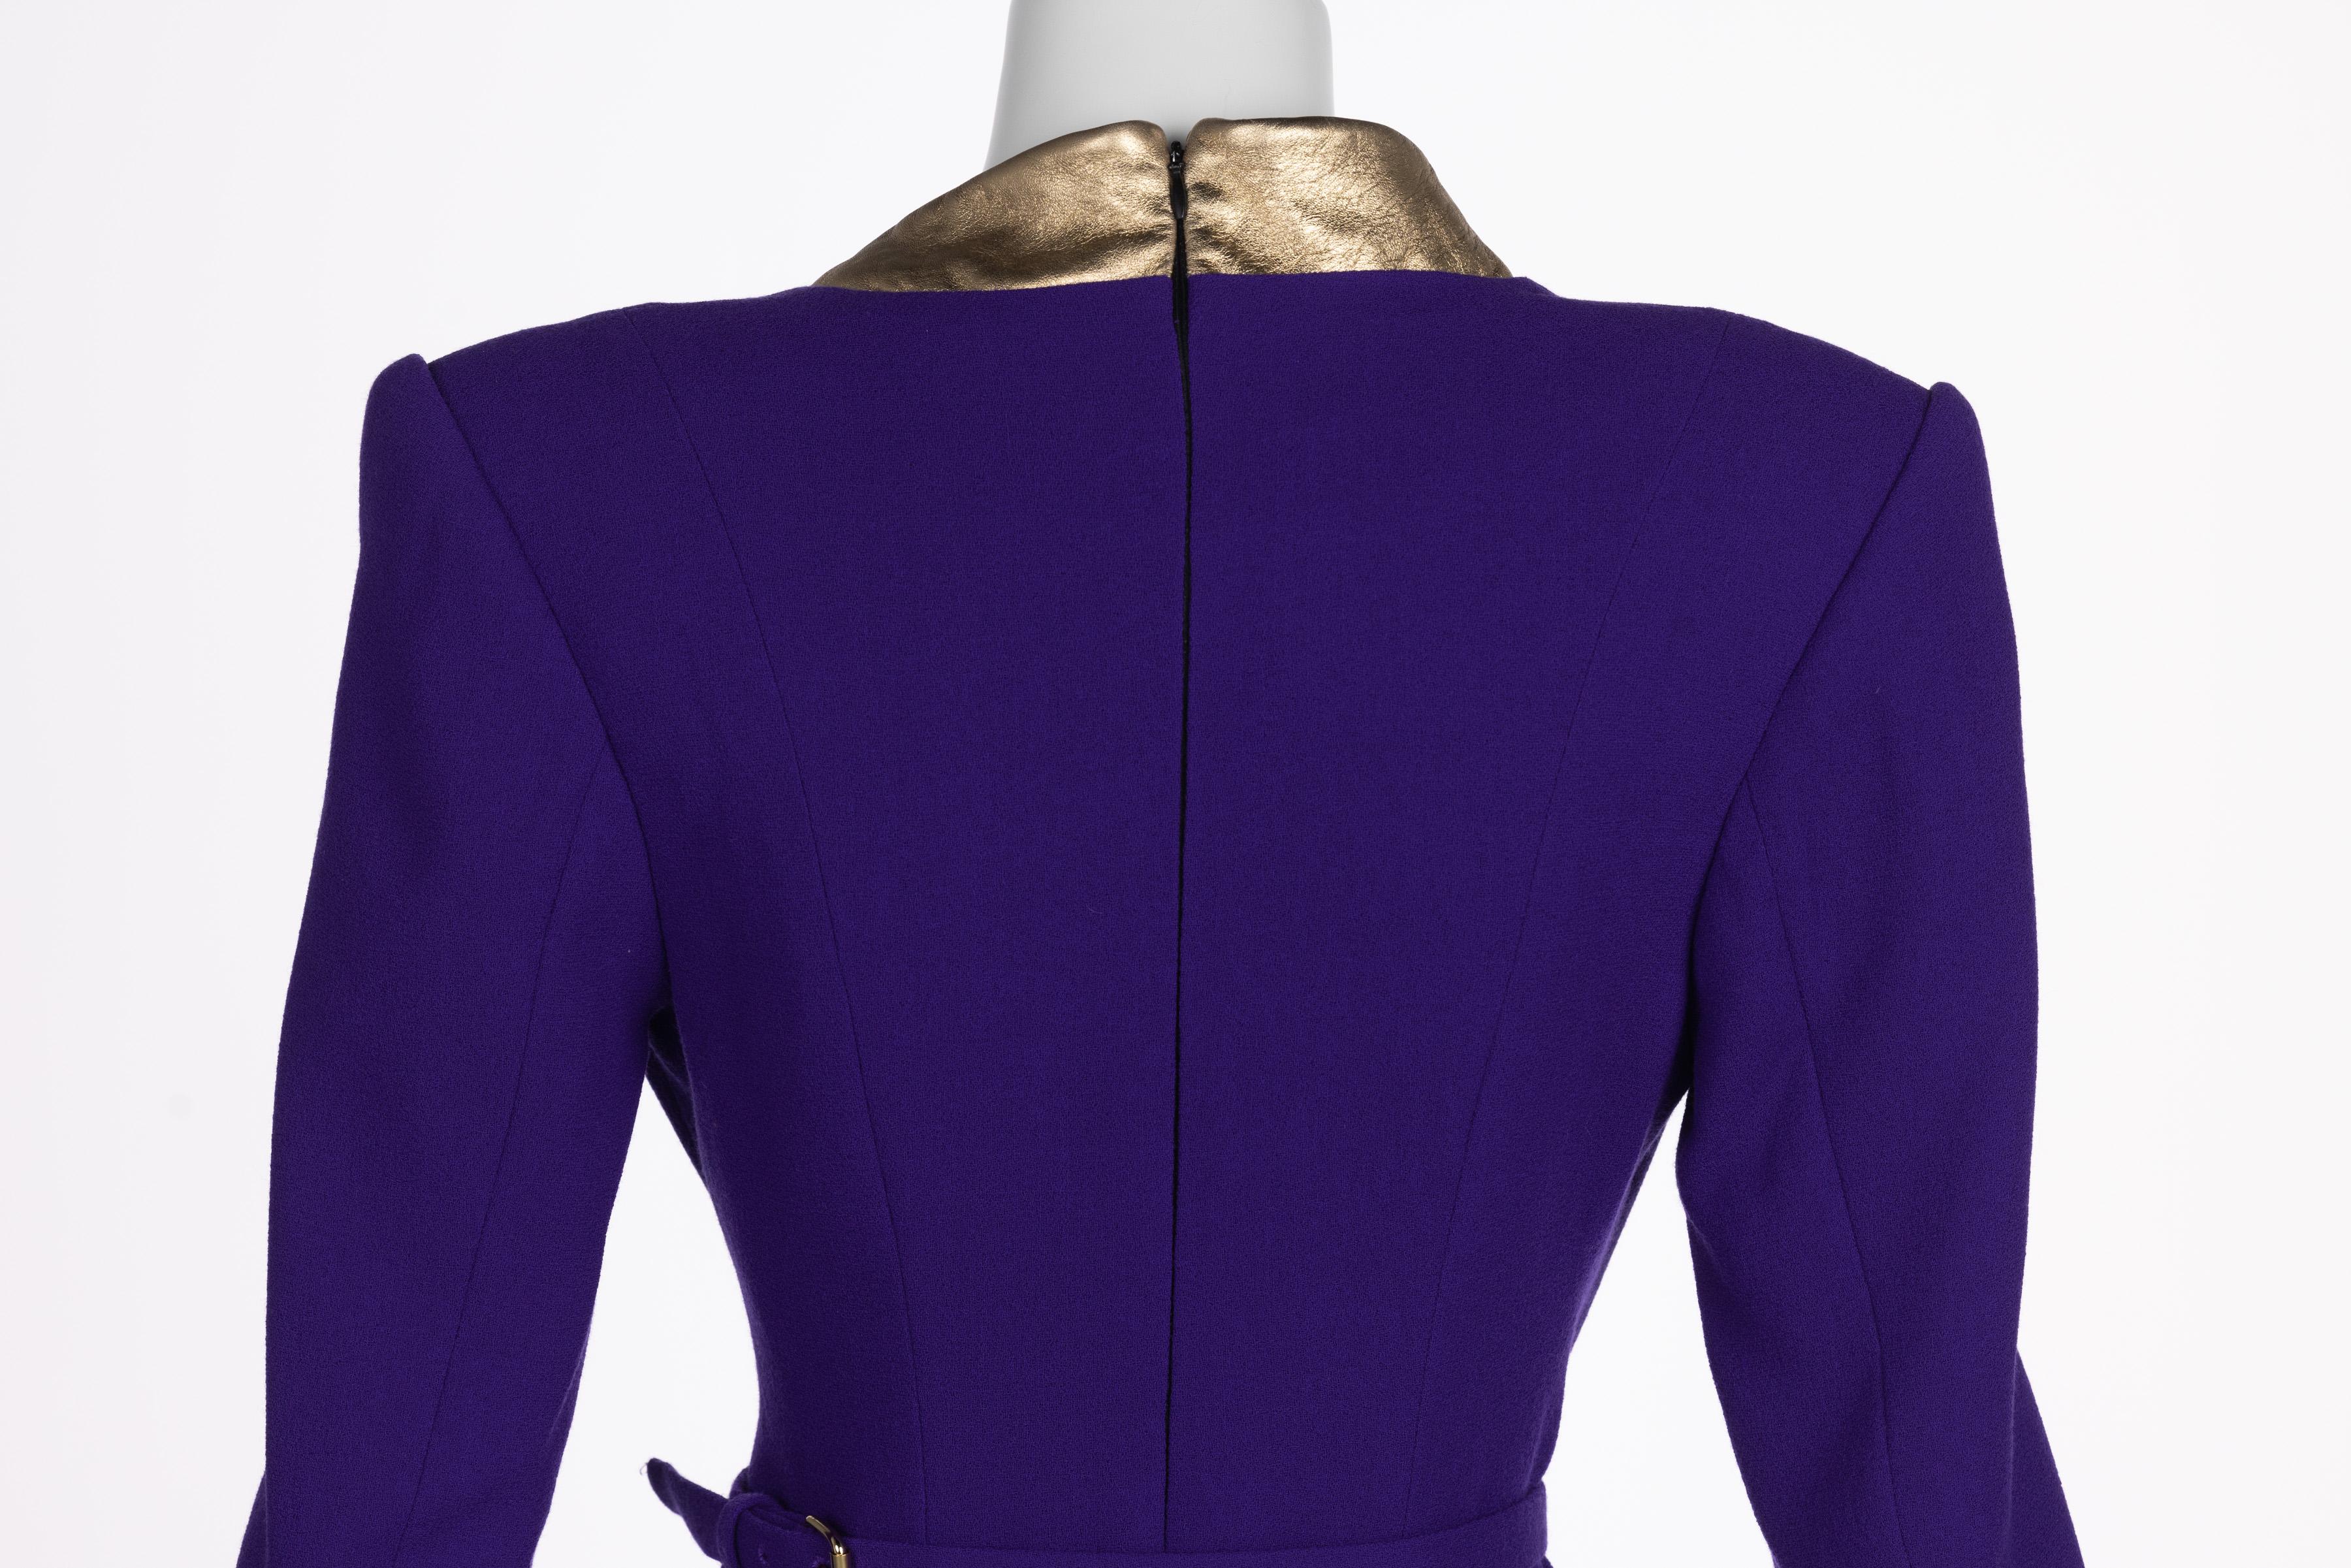 Ronald Van der kemp Haute Couture Dress, 2018 For Sale 6